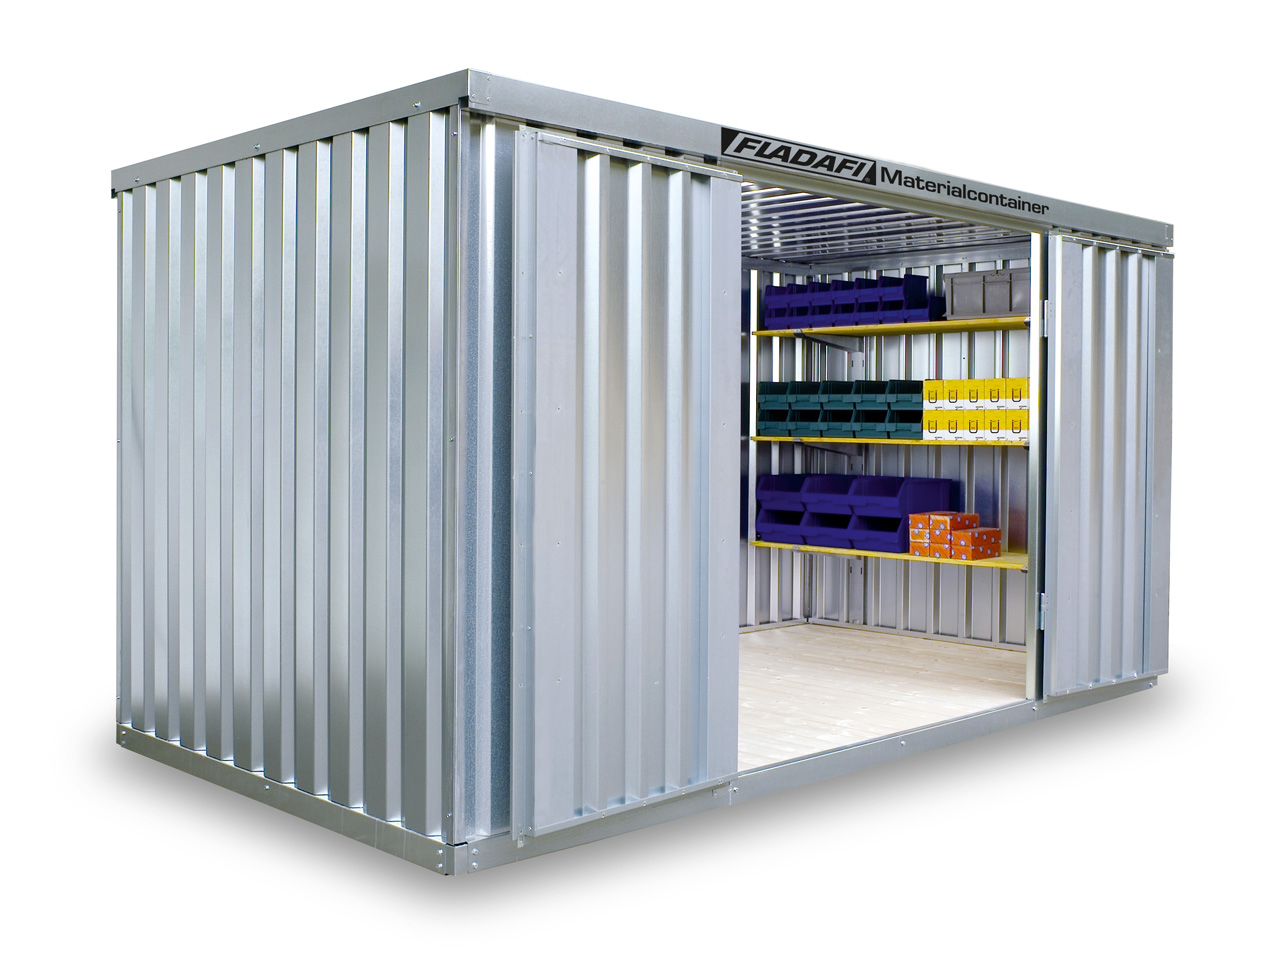 FLADAFI Materialcontainer MC 1400 ✔️ günstig bei HWG-Tec kaufen! ✔️ mit Holzboden ✔️